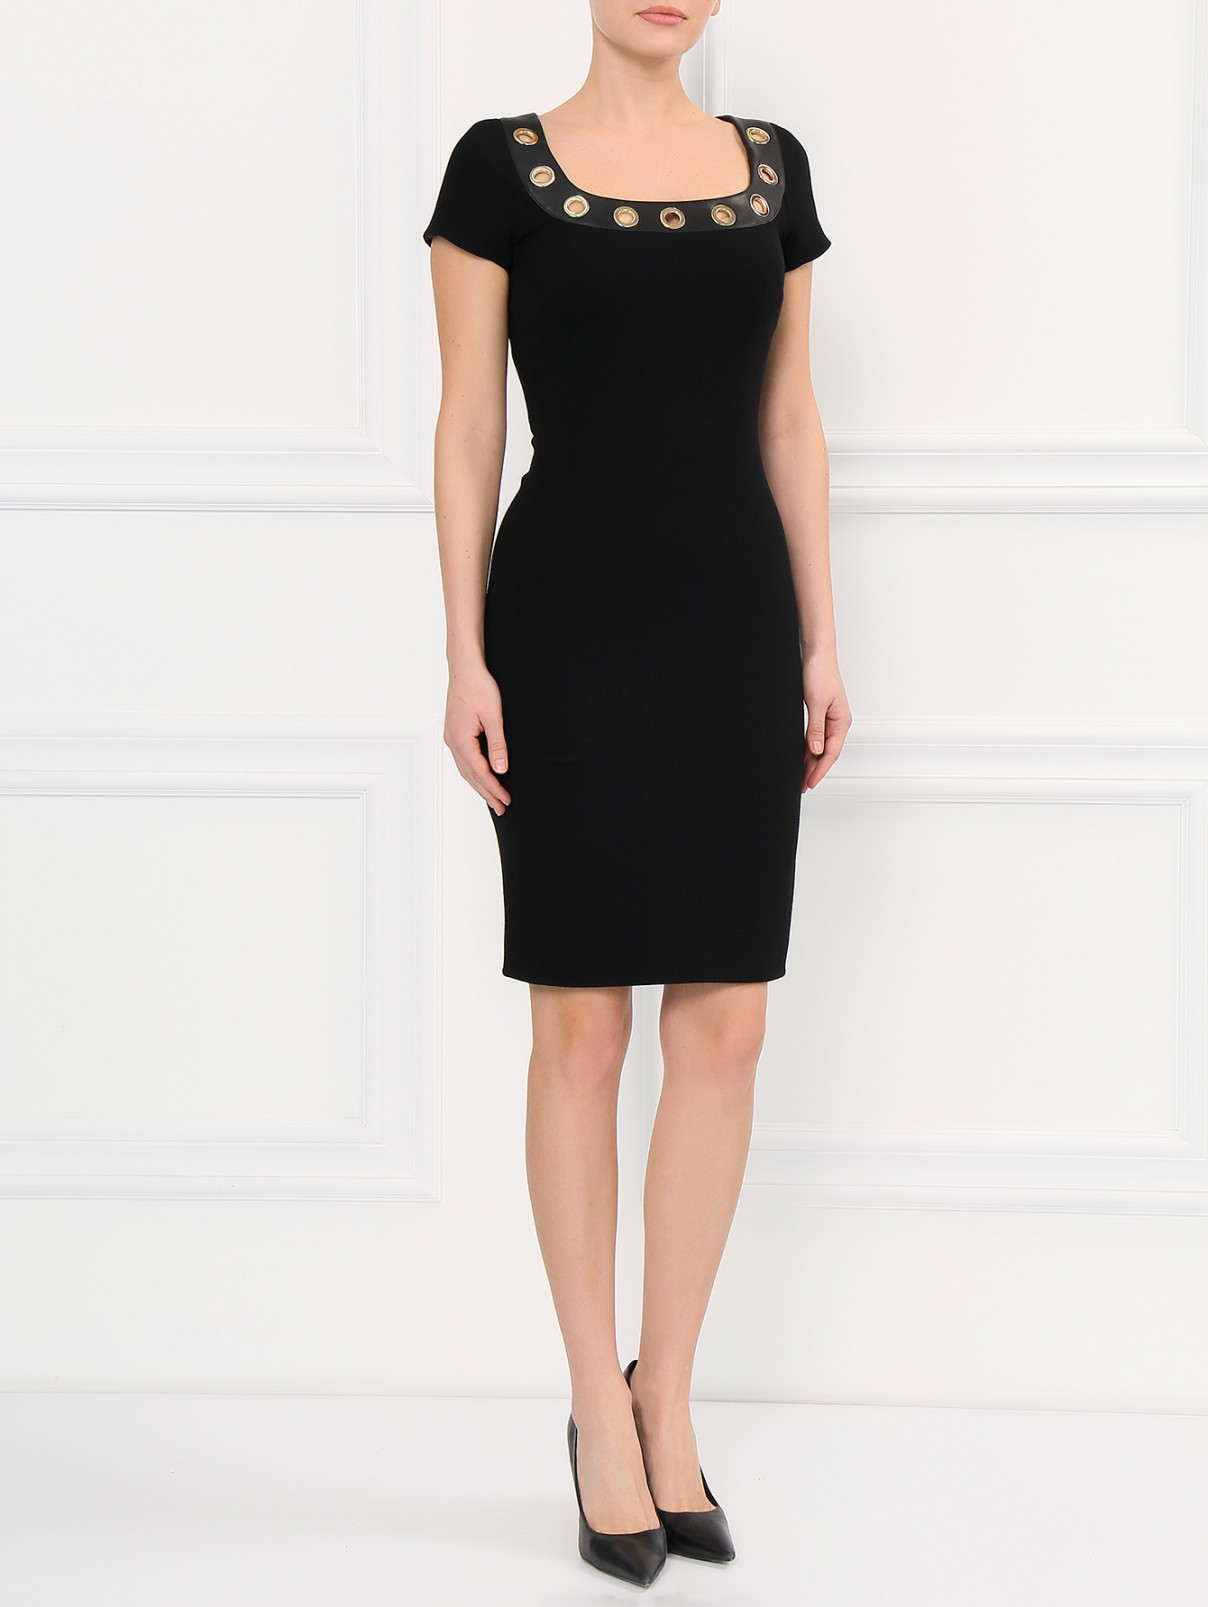 Платье-футляр из шерсти с металлической фурнитурой Moschino Boutique  –  Модель Общий вид  – Цвет:  Черный